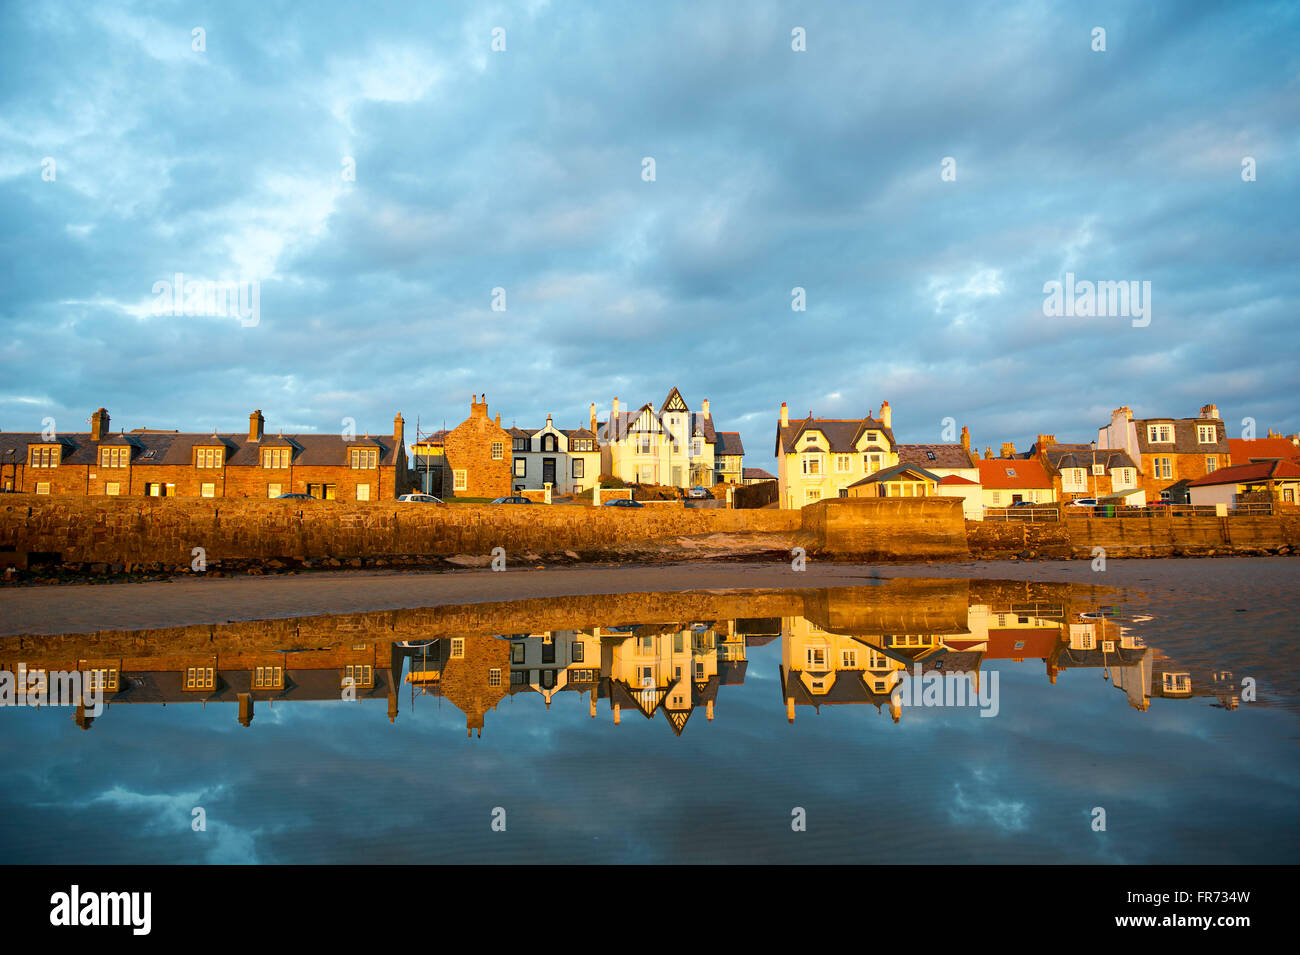 20.03.2016, geht die Sonne auf einer Häuserzeile spiegelt sich in dem Wasser bei Elie, eine Küstenstadt in der East Neuk of Fife, Schottland. Stockfoto